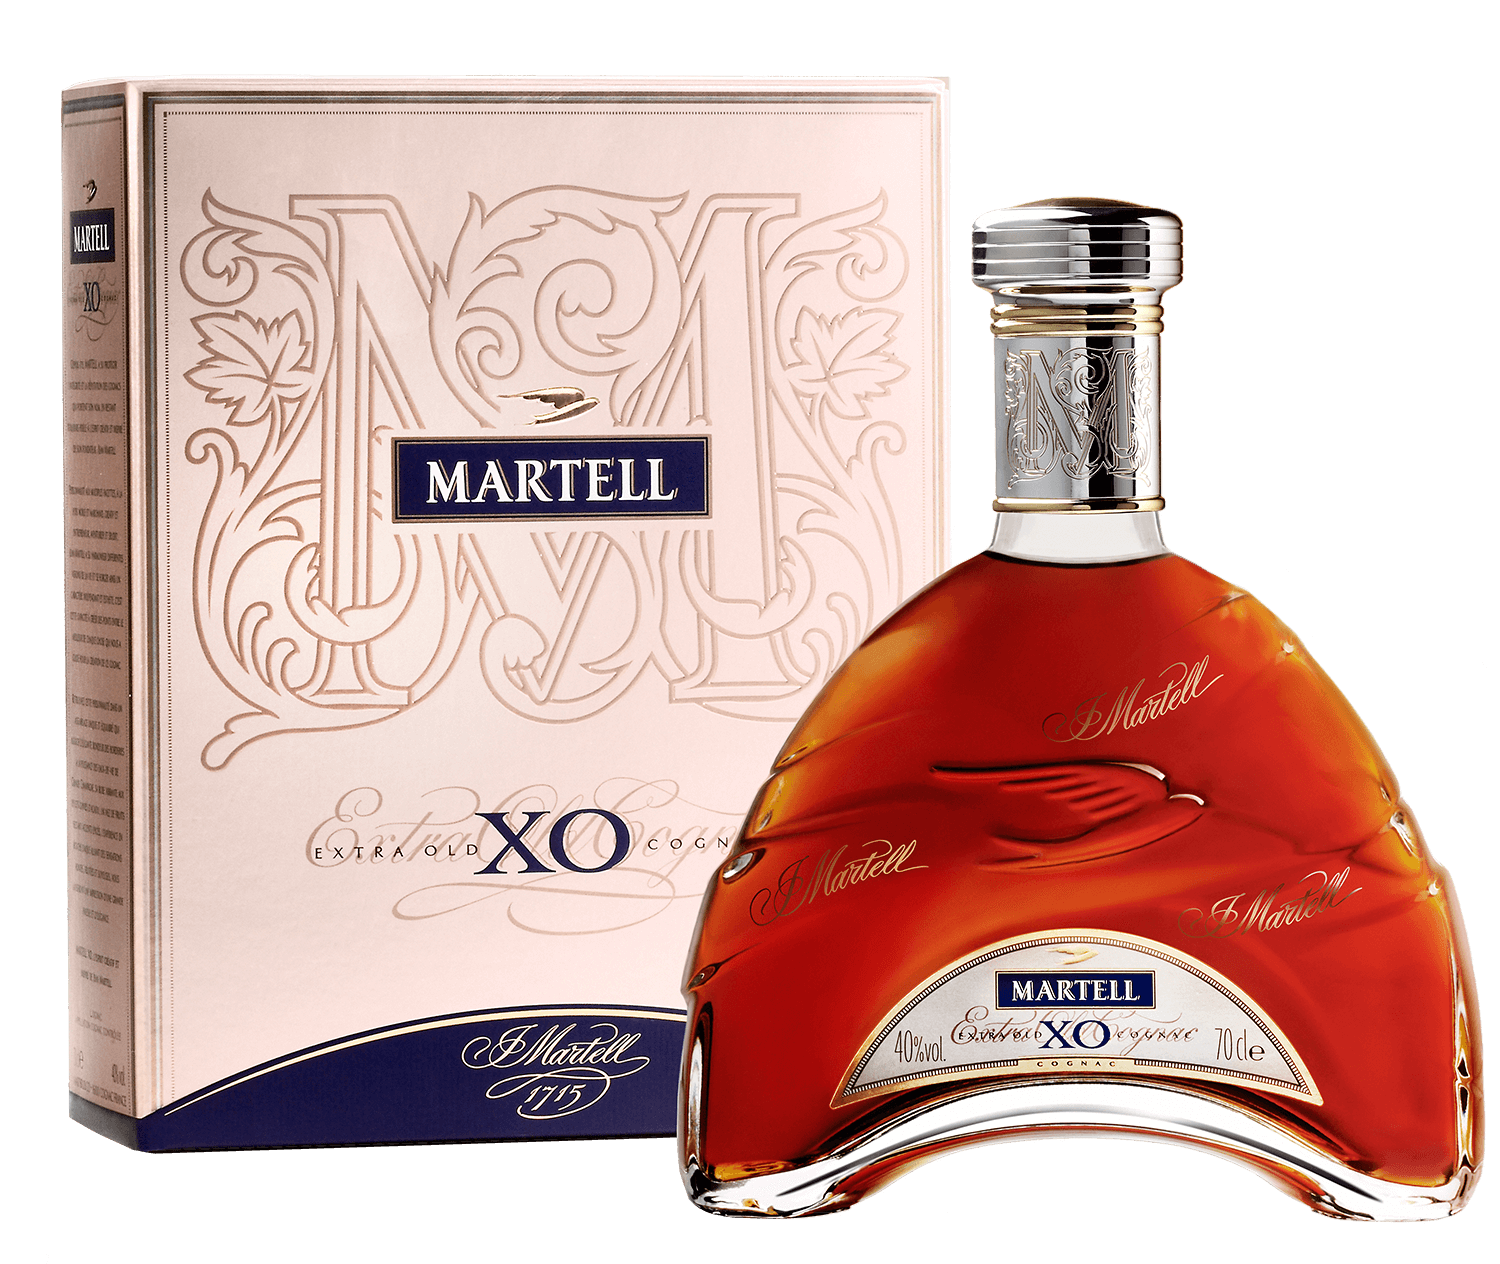 Martell Chanteloup Perspective XXO (gift box) martell xo gift box